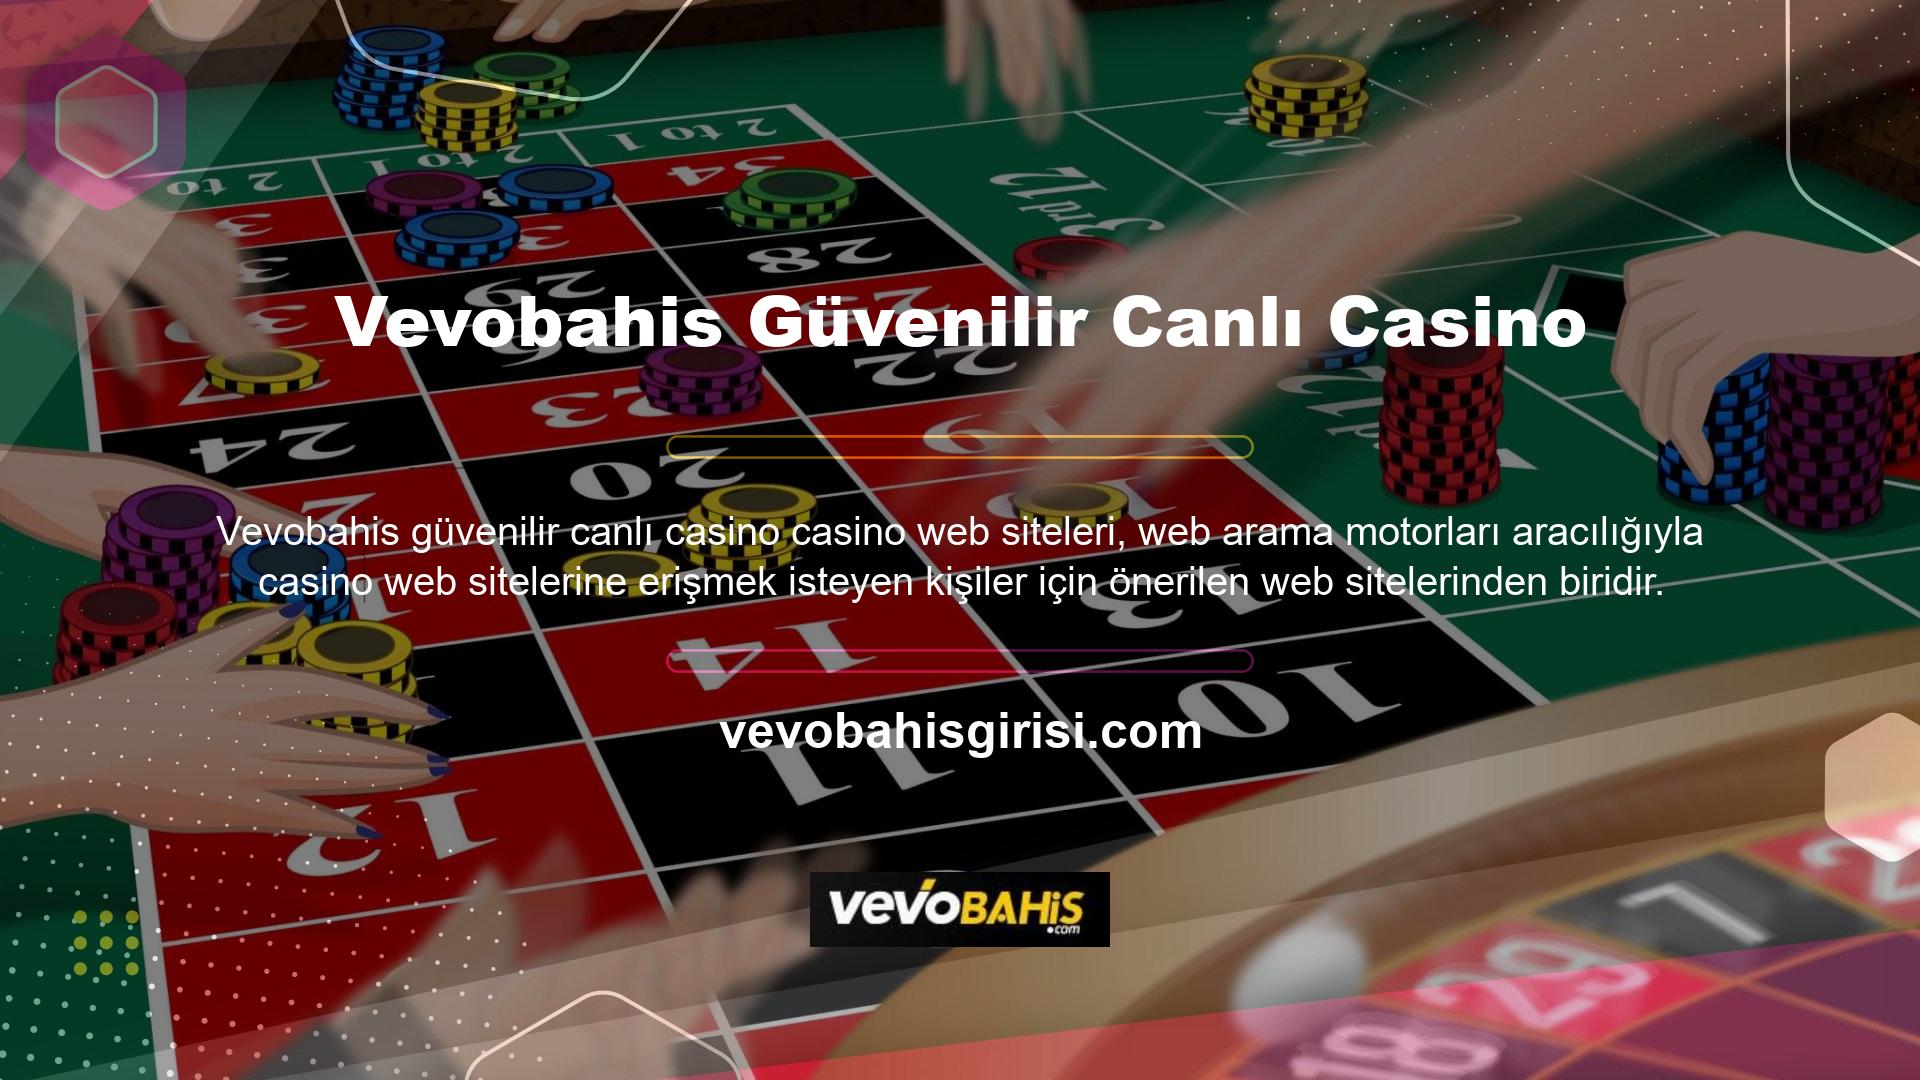 Bu site canlı casino oyunları kategorisine sahiptir ve en iyi bahis tekliflerini sunan sitelerden biridir